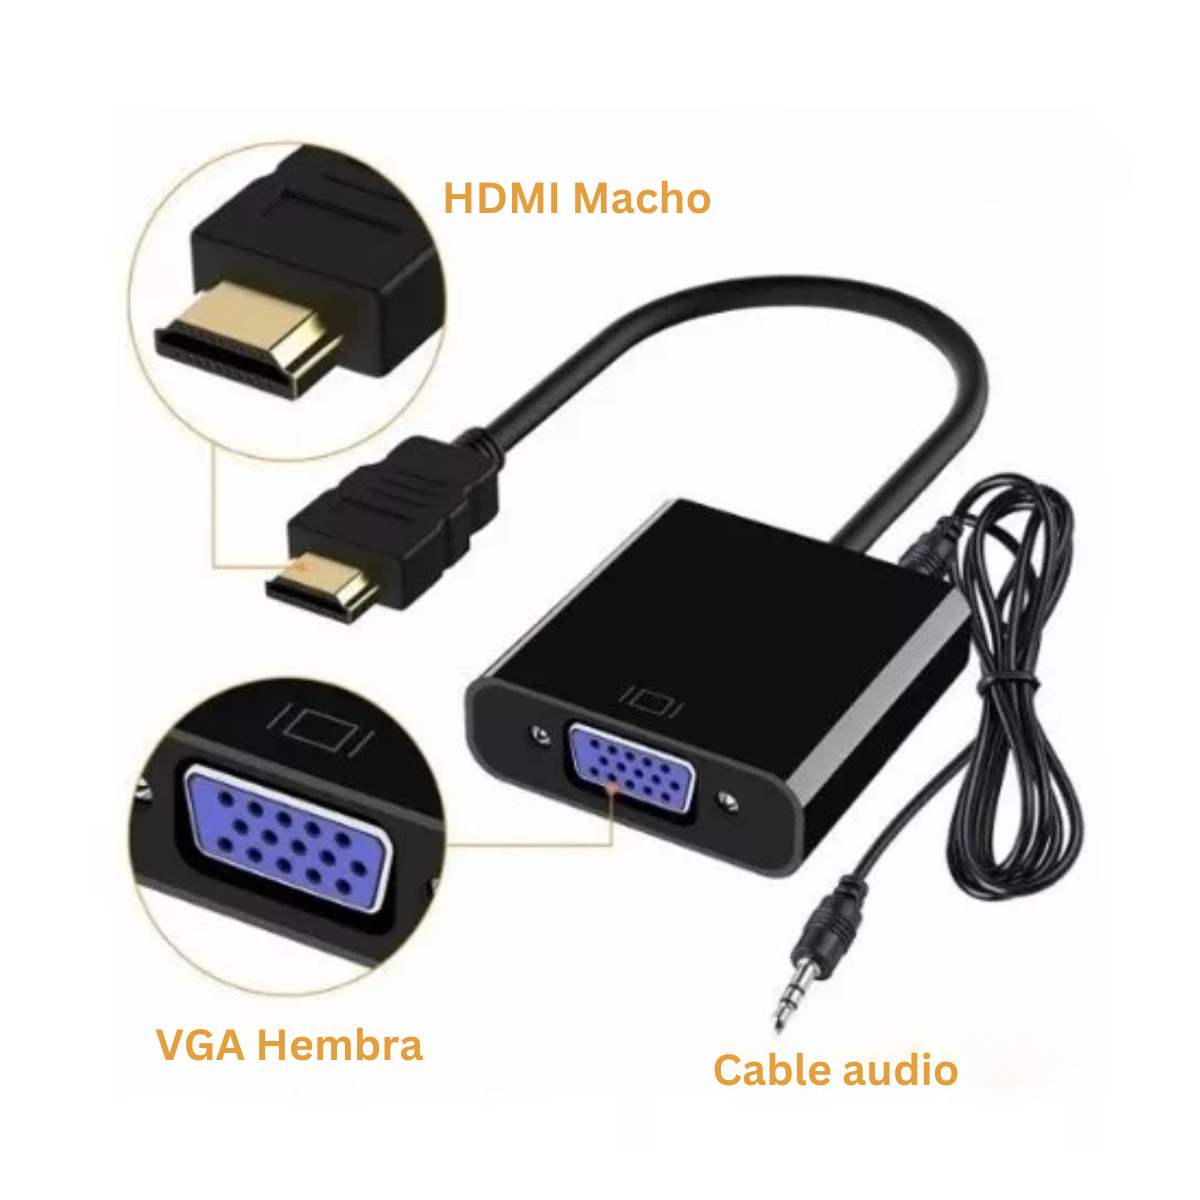 Convertidor Hdmi a Vga con cable audio